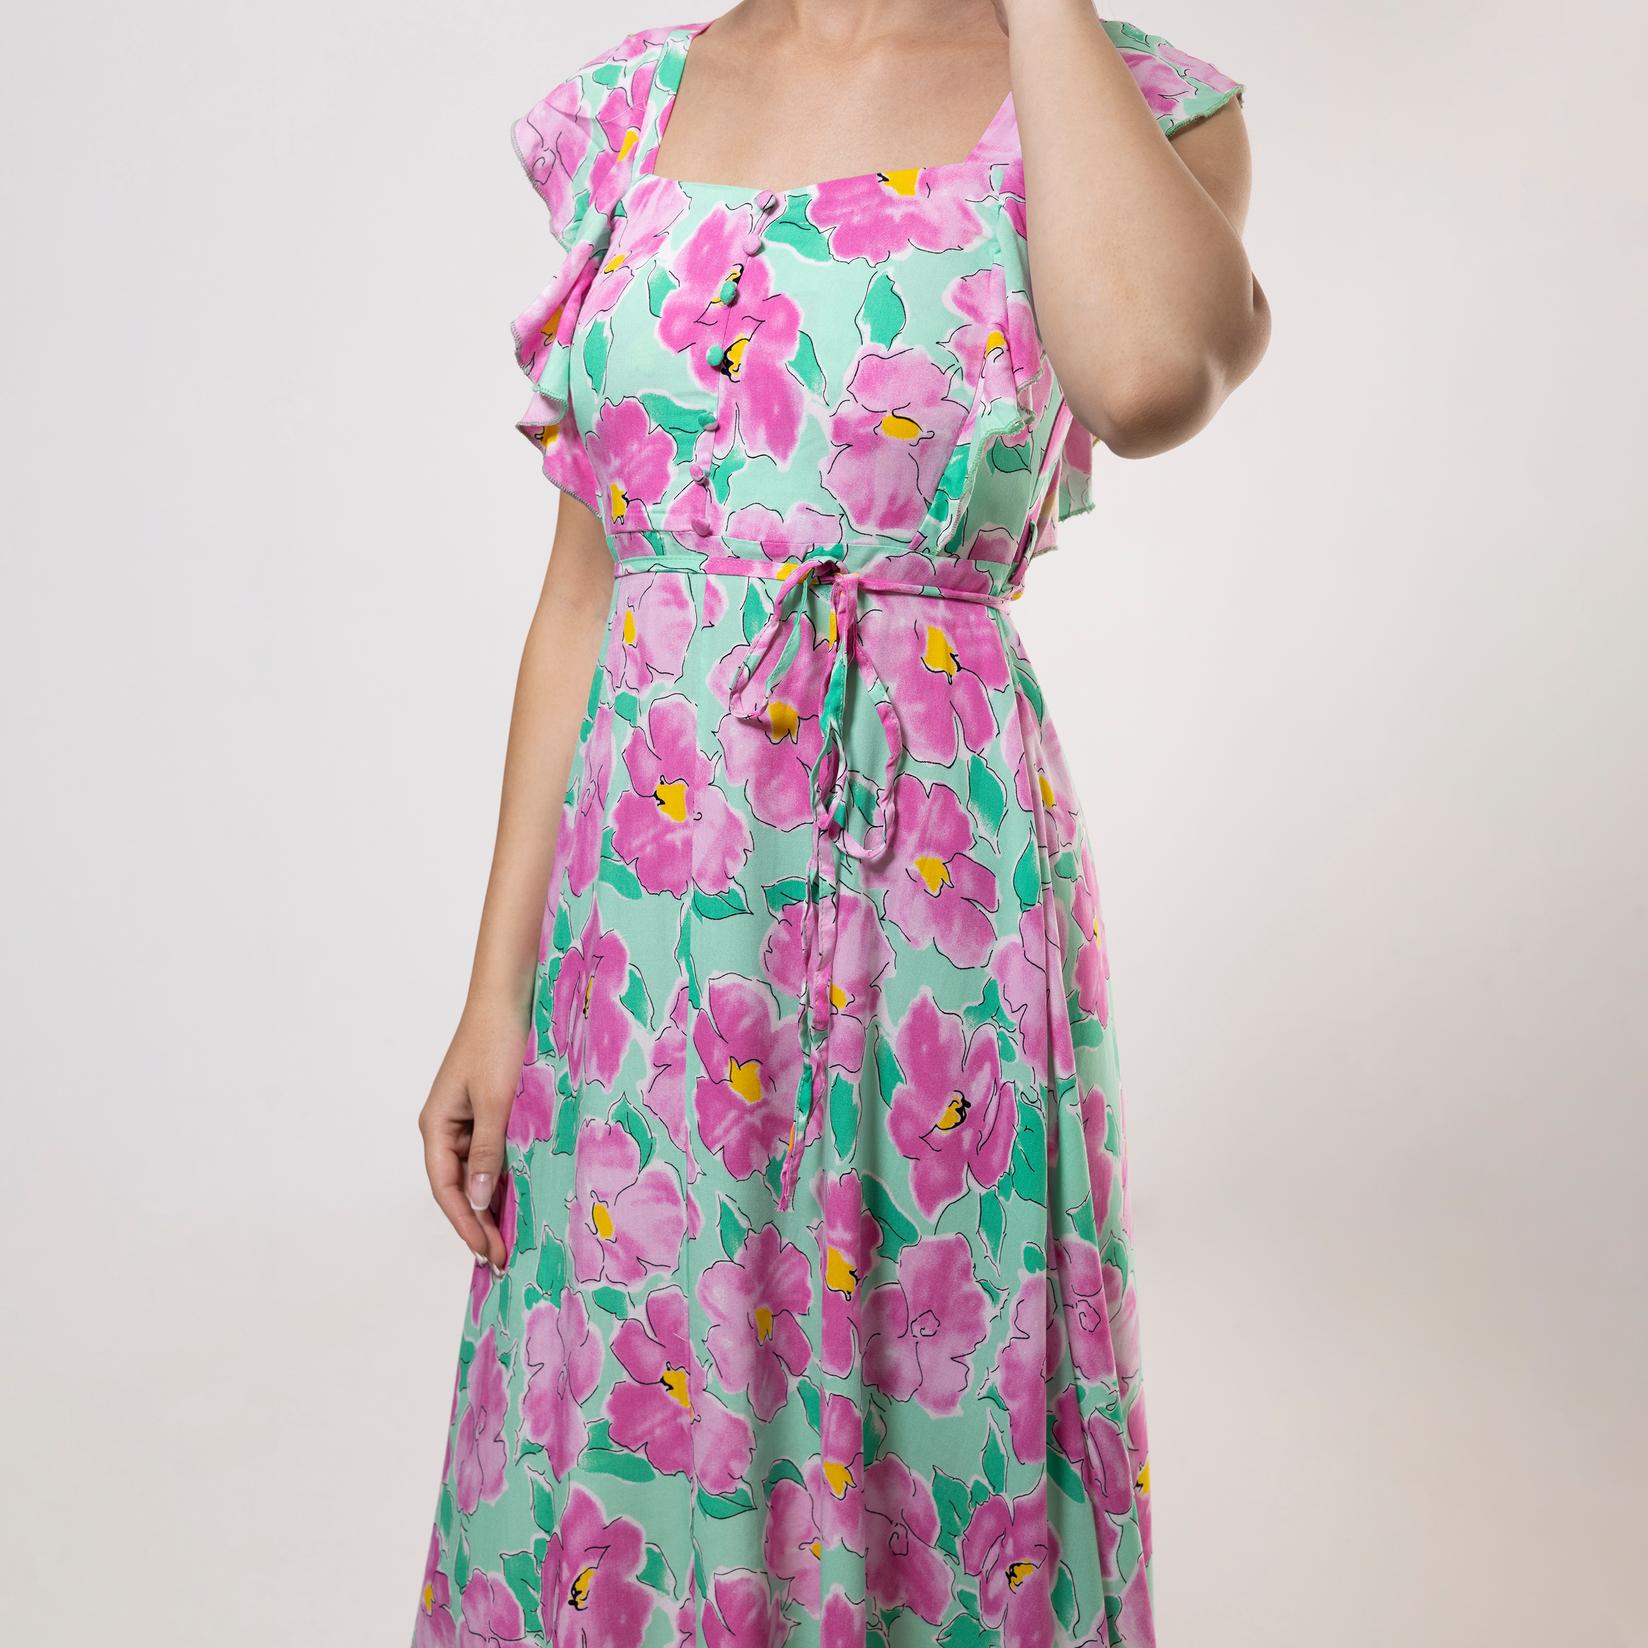 Selected image for FAME Ženska haljina sa karner rukavima zeleno-roze